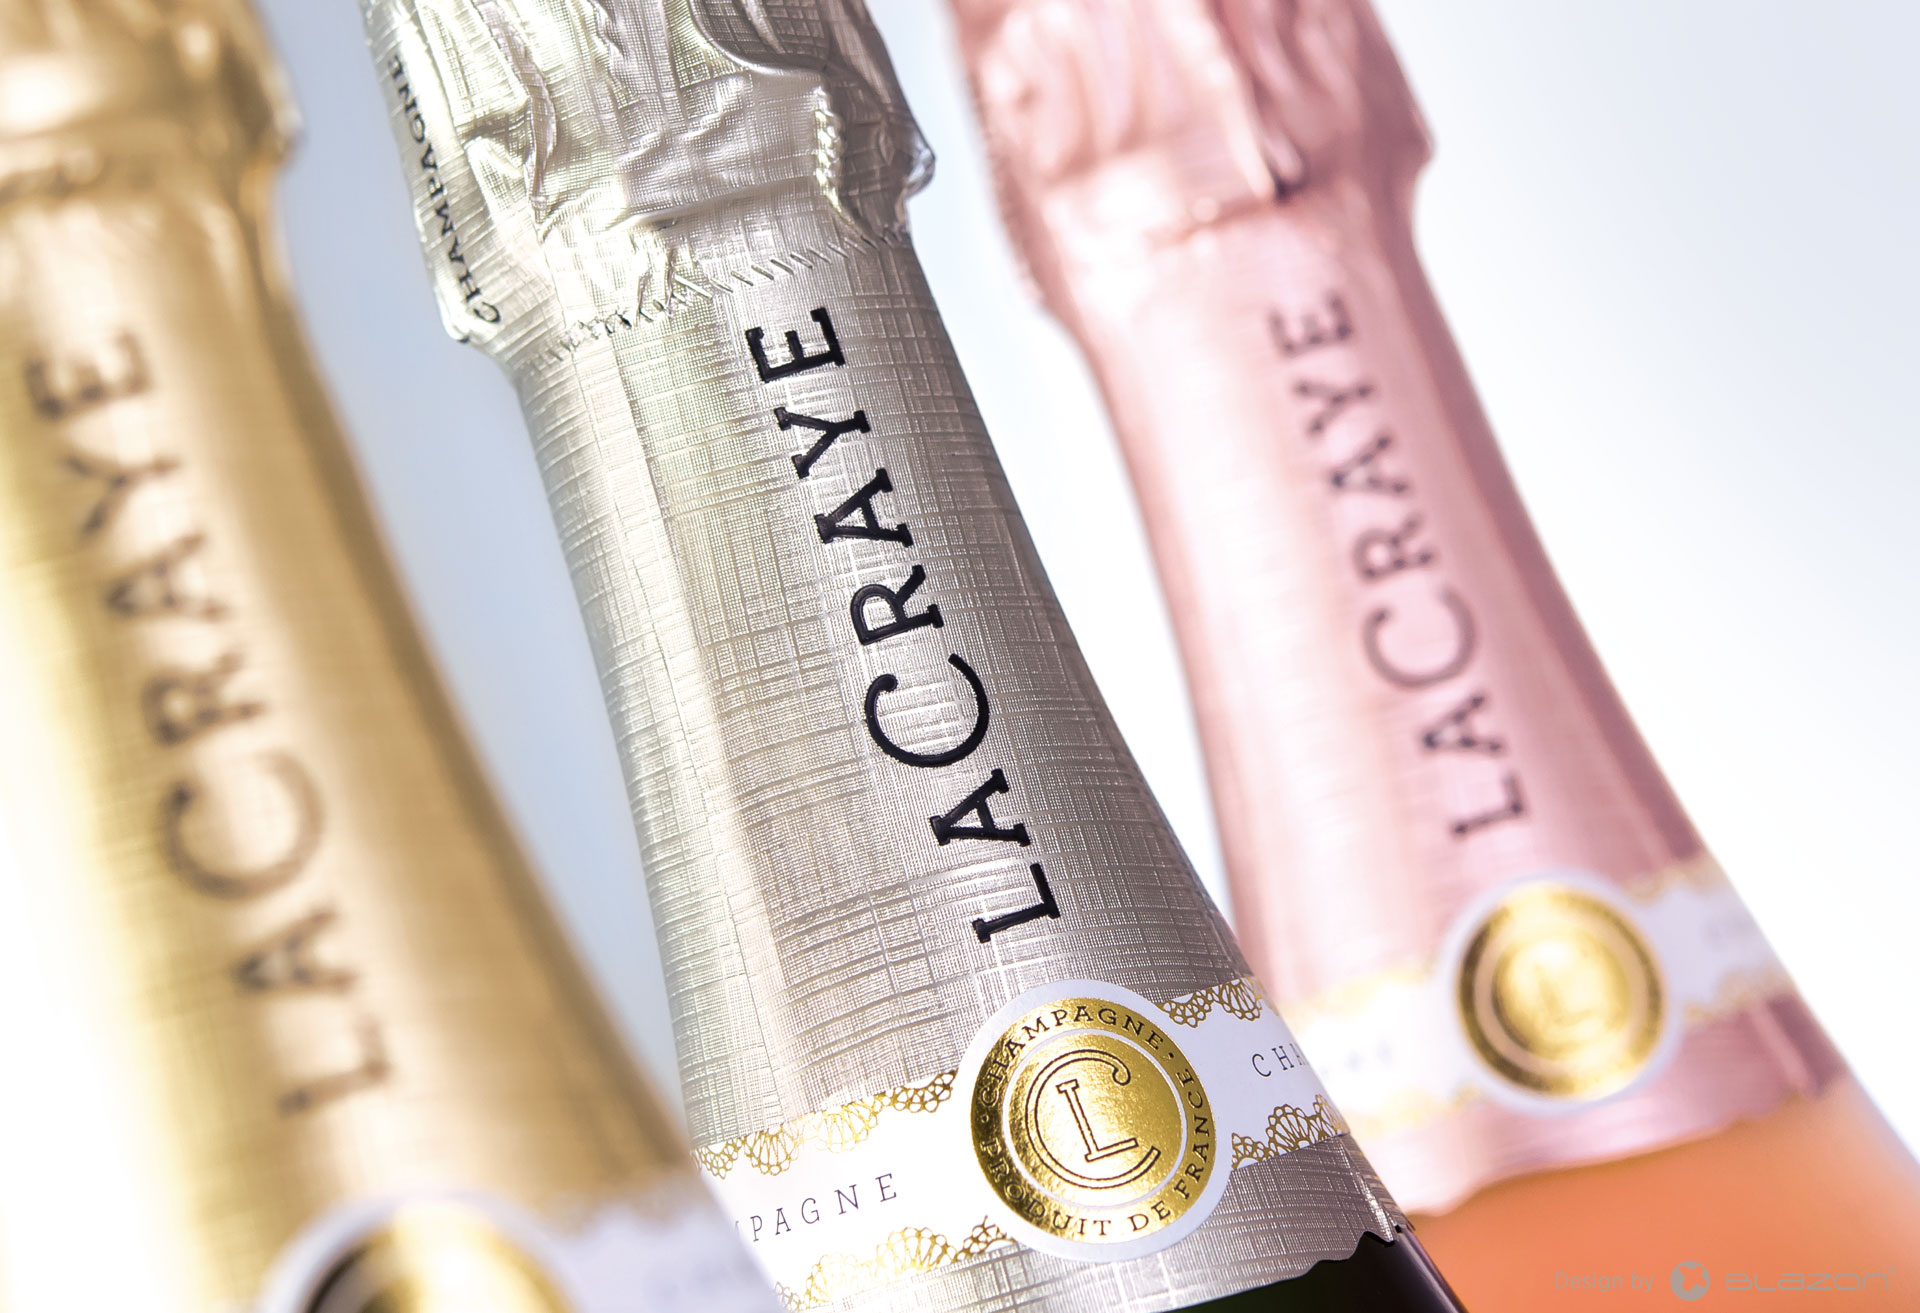 Création et branding global d’une nouvelle marque de Champagne